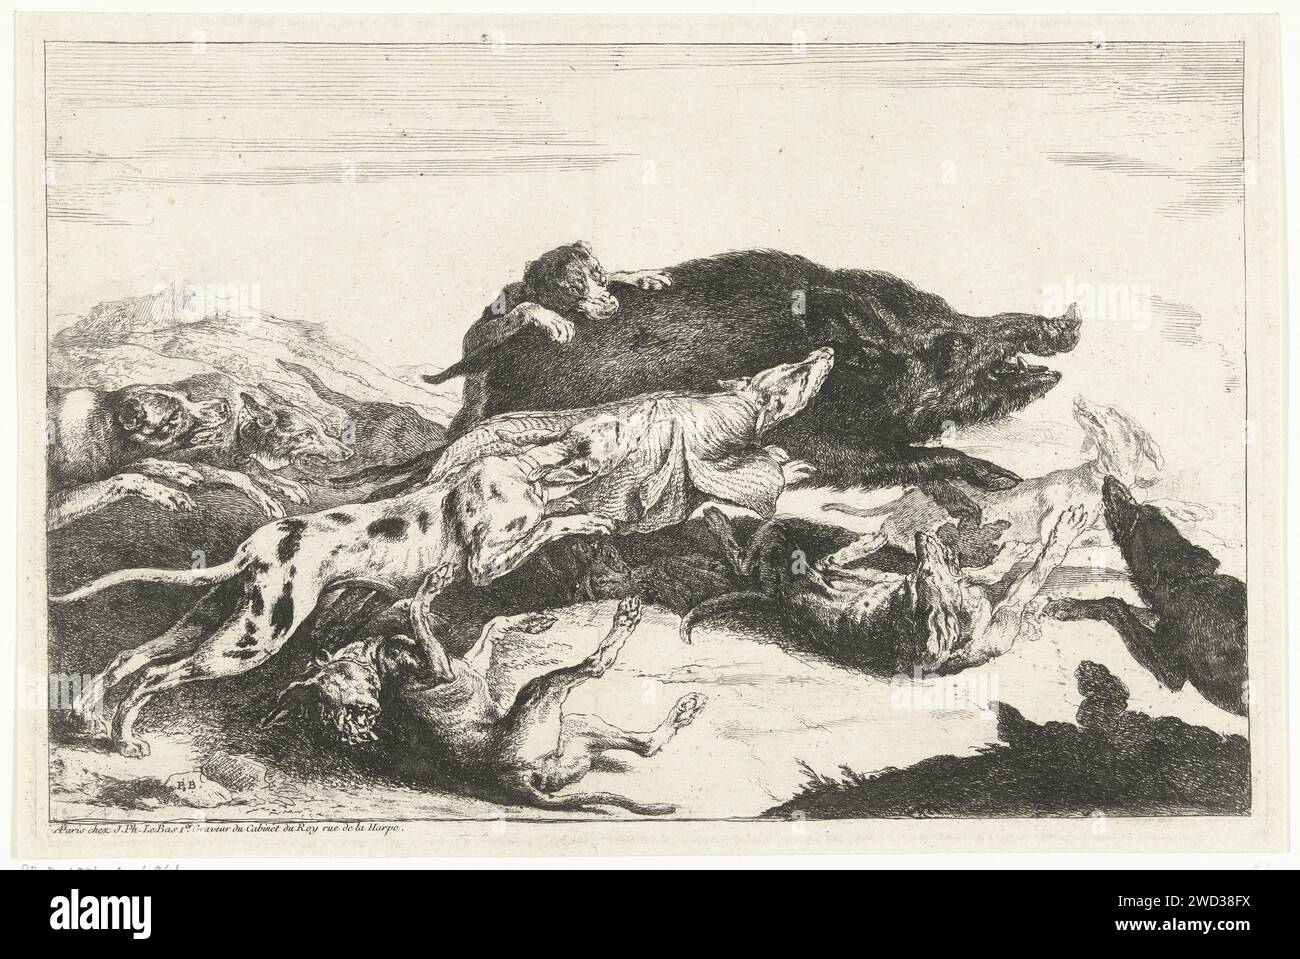 Les chiens chassent un Zwijn, Peeter Boel, 1727 - 1783 imprimer Wildezwijnenjacht. Une meute de chiens conduit un sanglier. Imprimeur : inconnu éditeur : Paris chasse à la gravure sur papier  mammifères. chasse au sanglier Banque D'Images